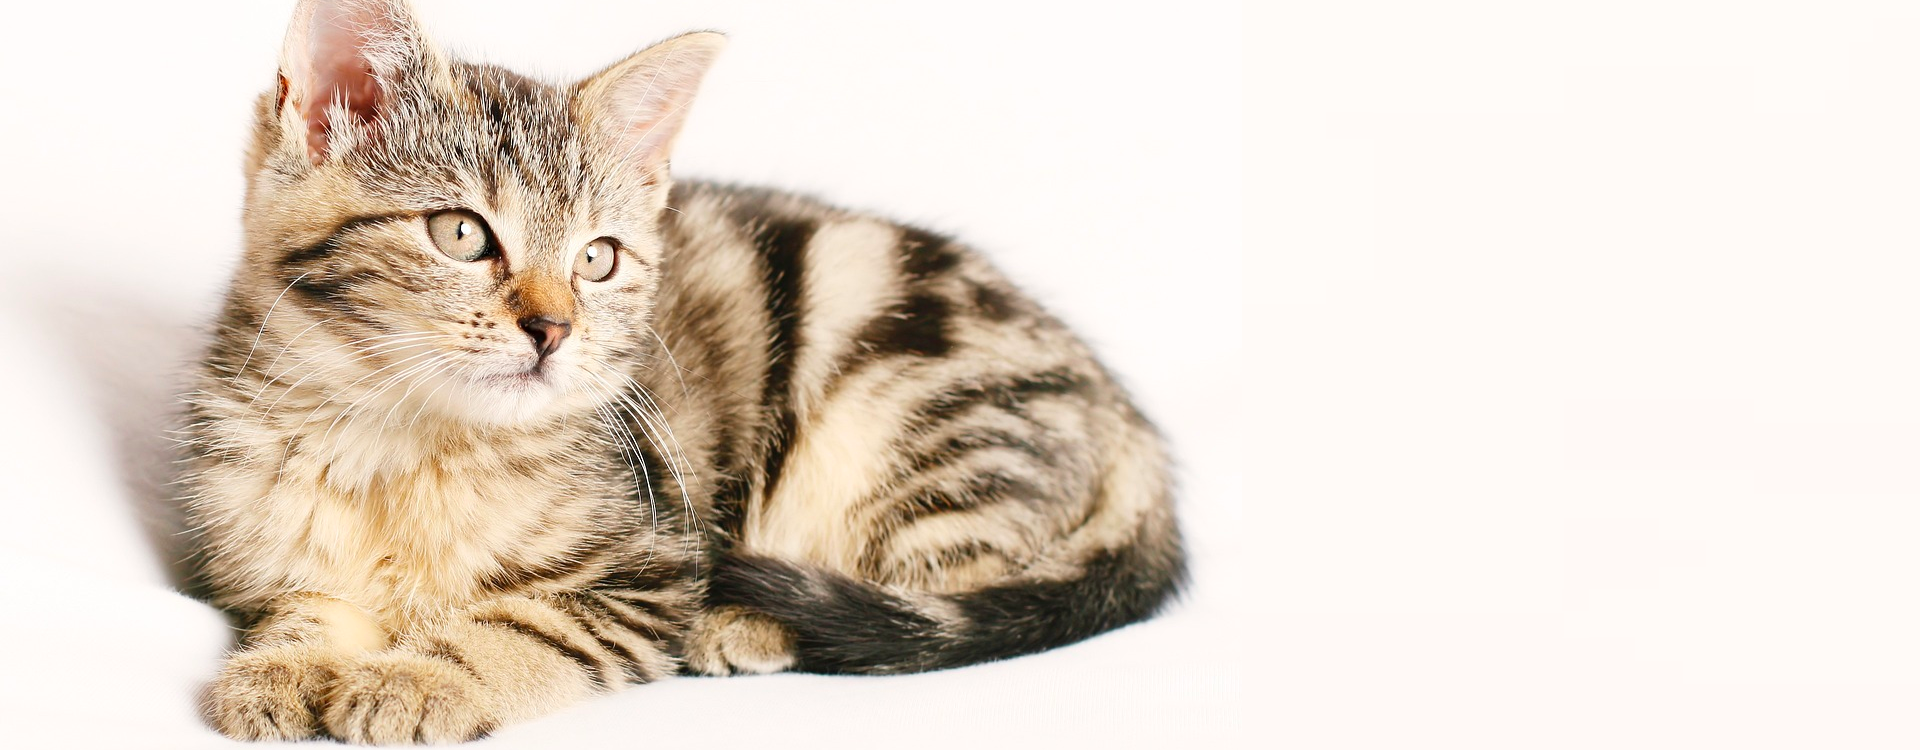 ¿Qué tipo de olores y sonidos causan estrés en los gatos?